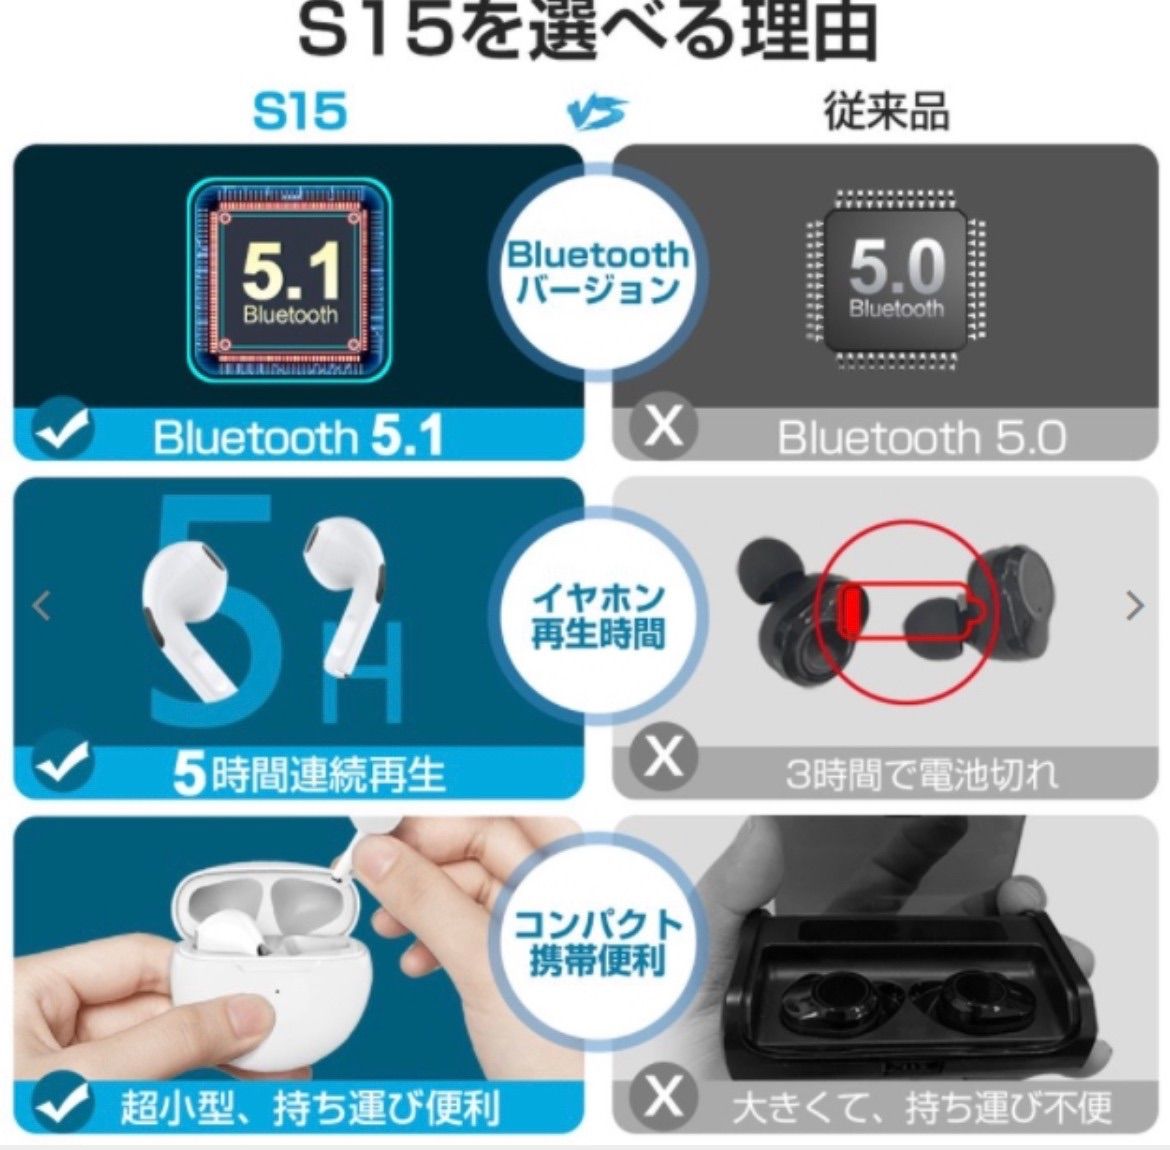 大人気【新品】AirPro9 ワイヤレスイヤホン　ブラック　箱あり　2022最新